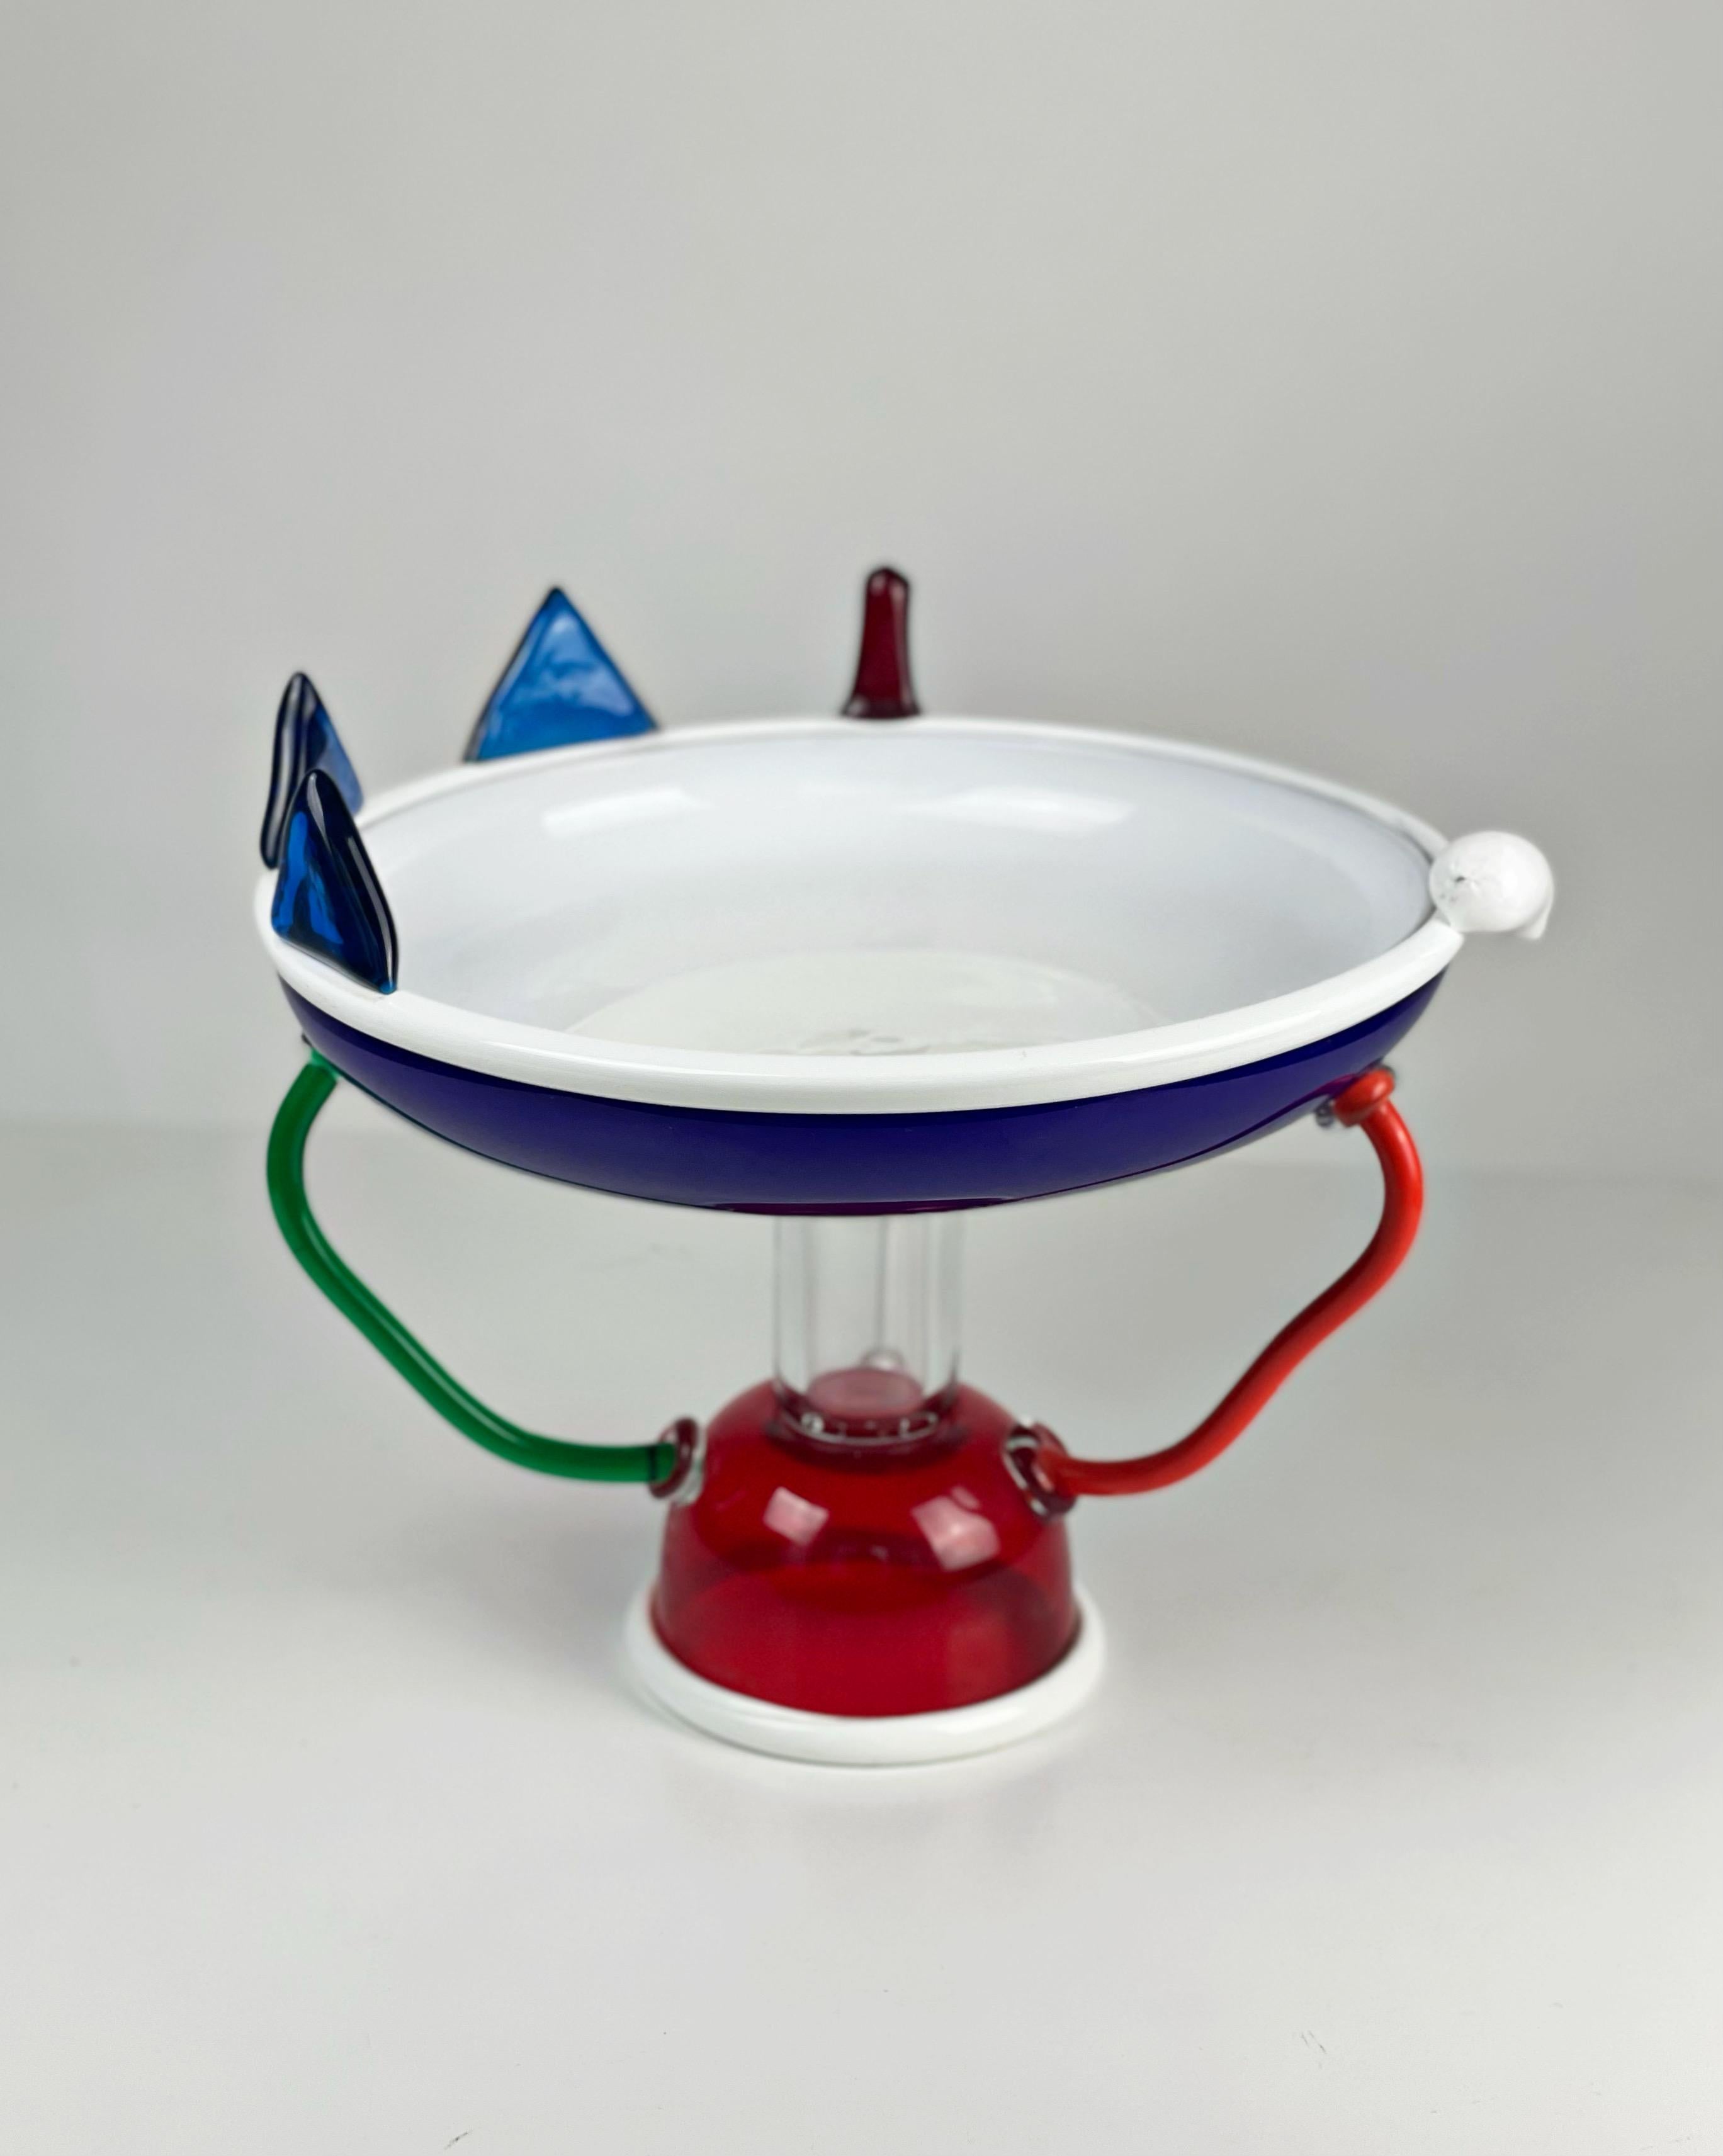 Vase/ Schale Modell „Sol“ entworfen von Ettore Sottsass für Memphis Milano aus Murano Glas, Ausführung Compagnia Vetraria Muranese um circa 1982, signiert.

Proveninez: Privatsammlung Peter Teichgräber

Designer: Ettore Sottsass
Modell: